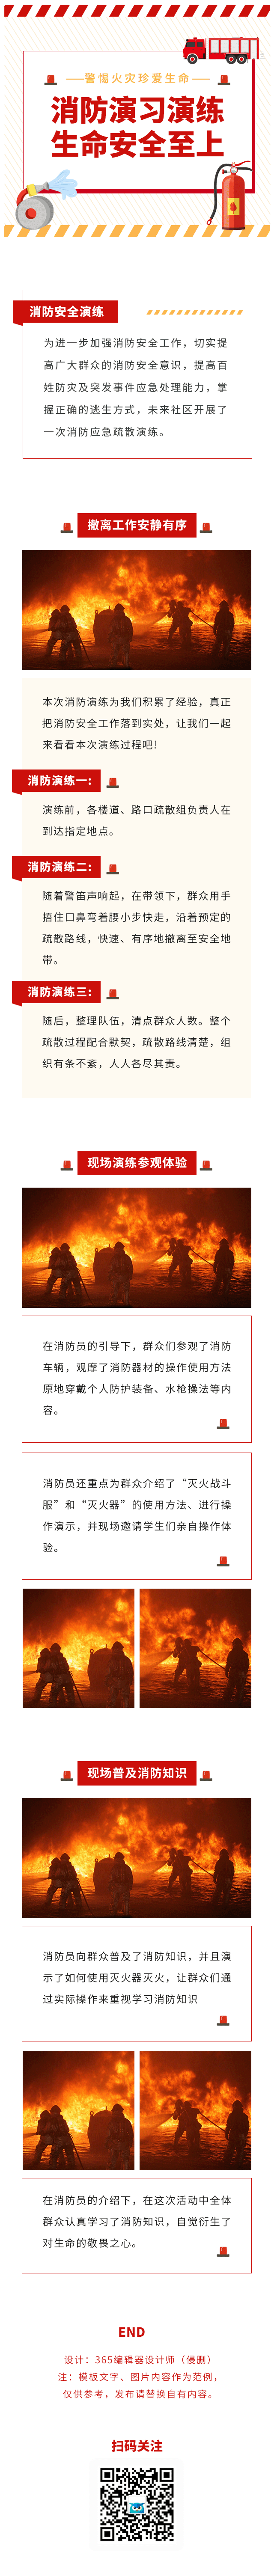 消防演习消防安全火灾科普常识公益活动政务